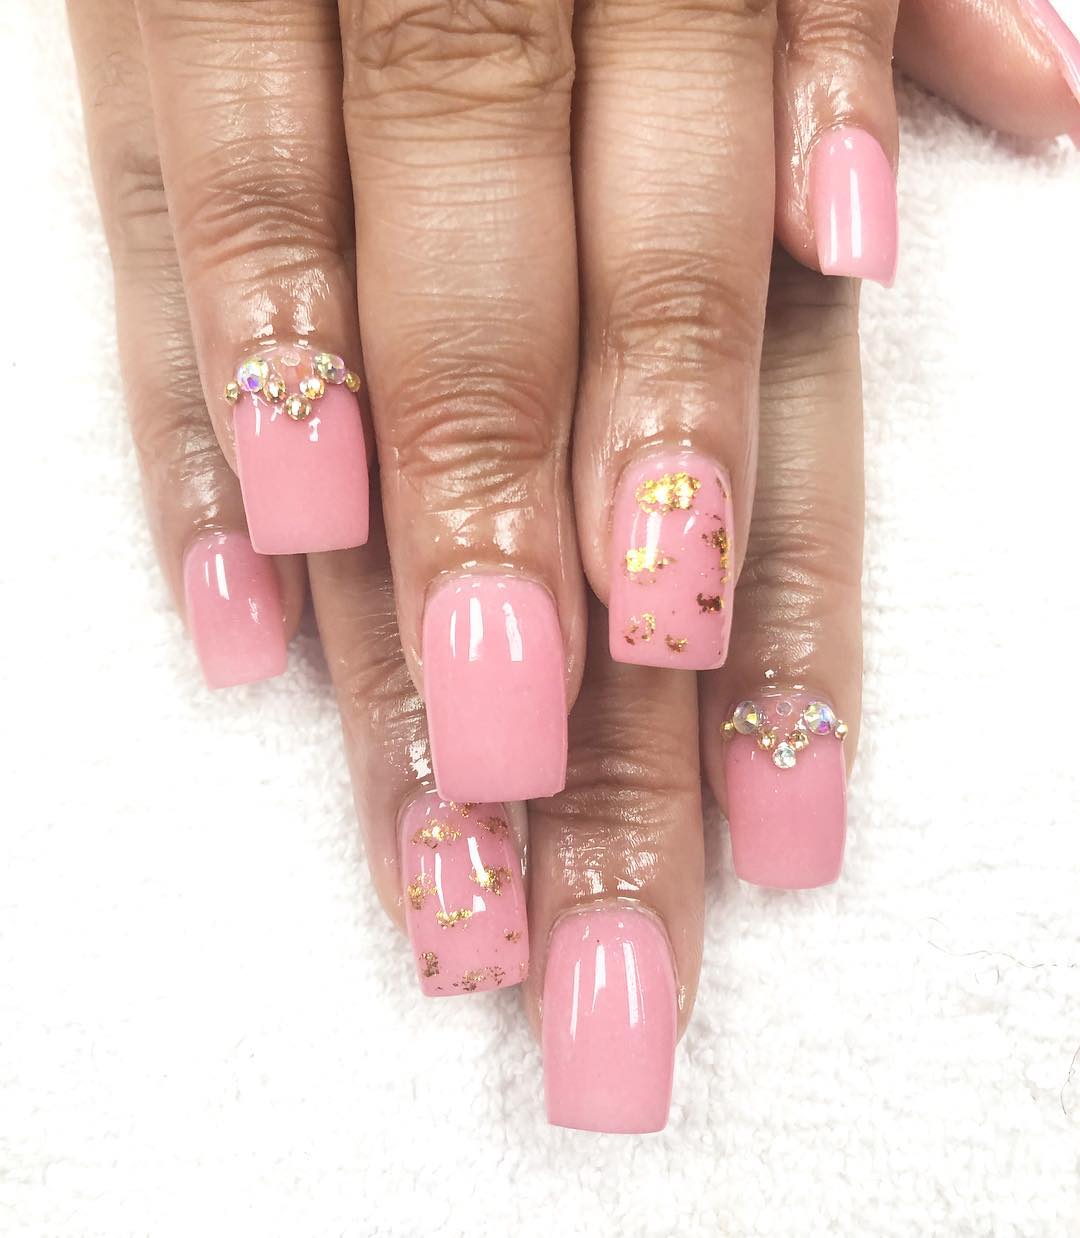 vernis poudre look rose forme carrée nouvelle tendance nail art